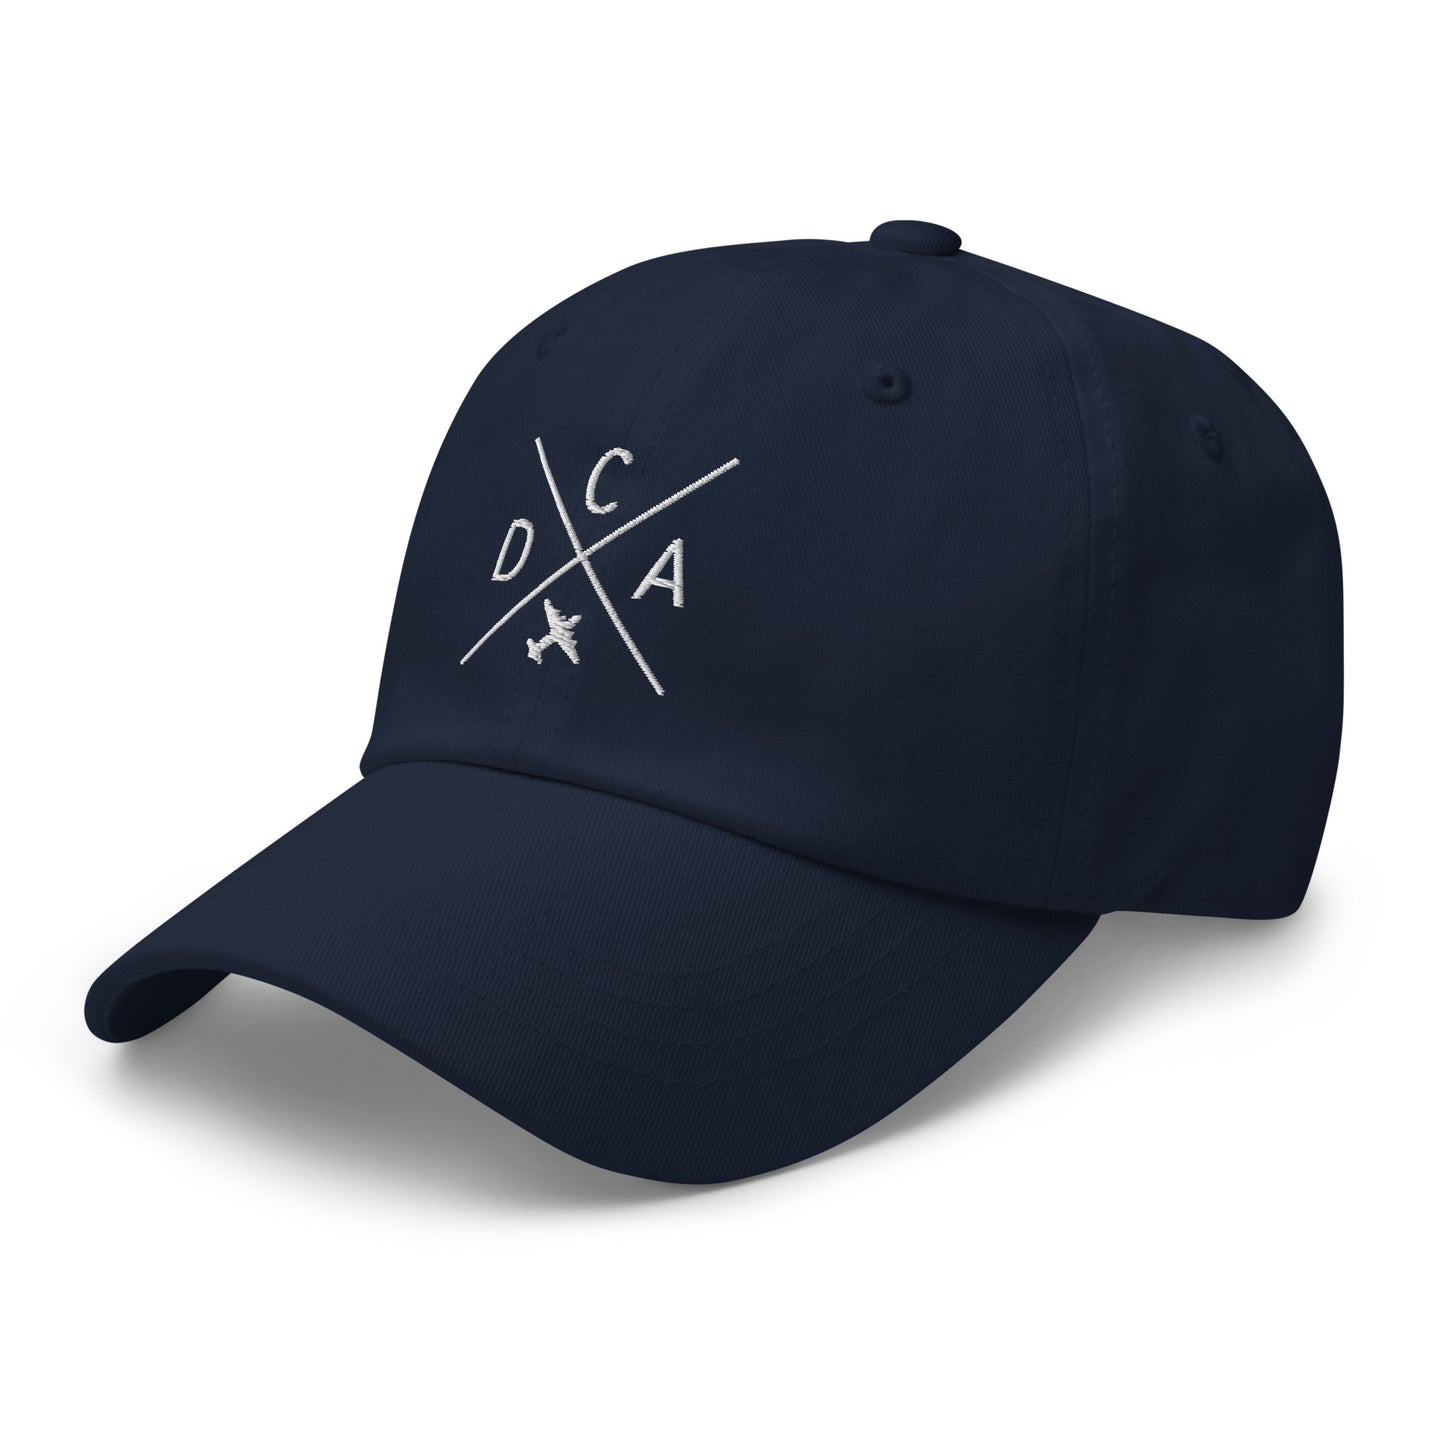 Crossed-X Dad Hat - White • DCA Washington • YHM Designs - Image 18